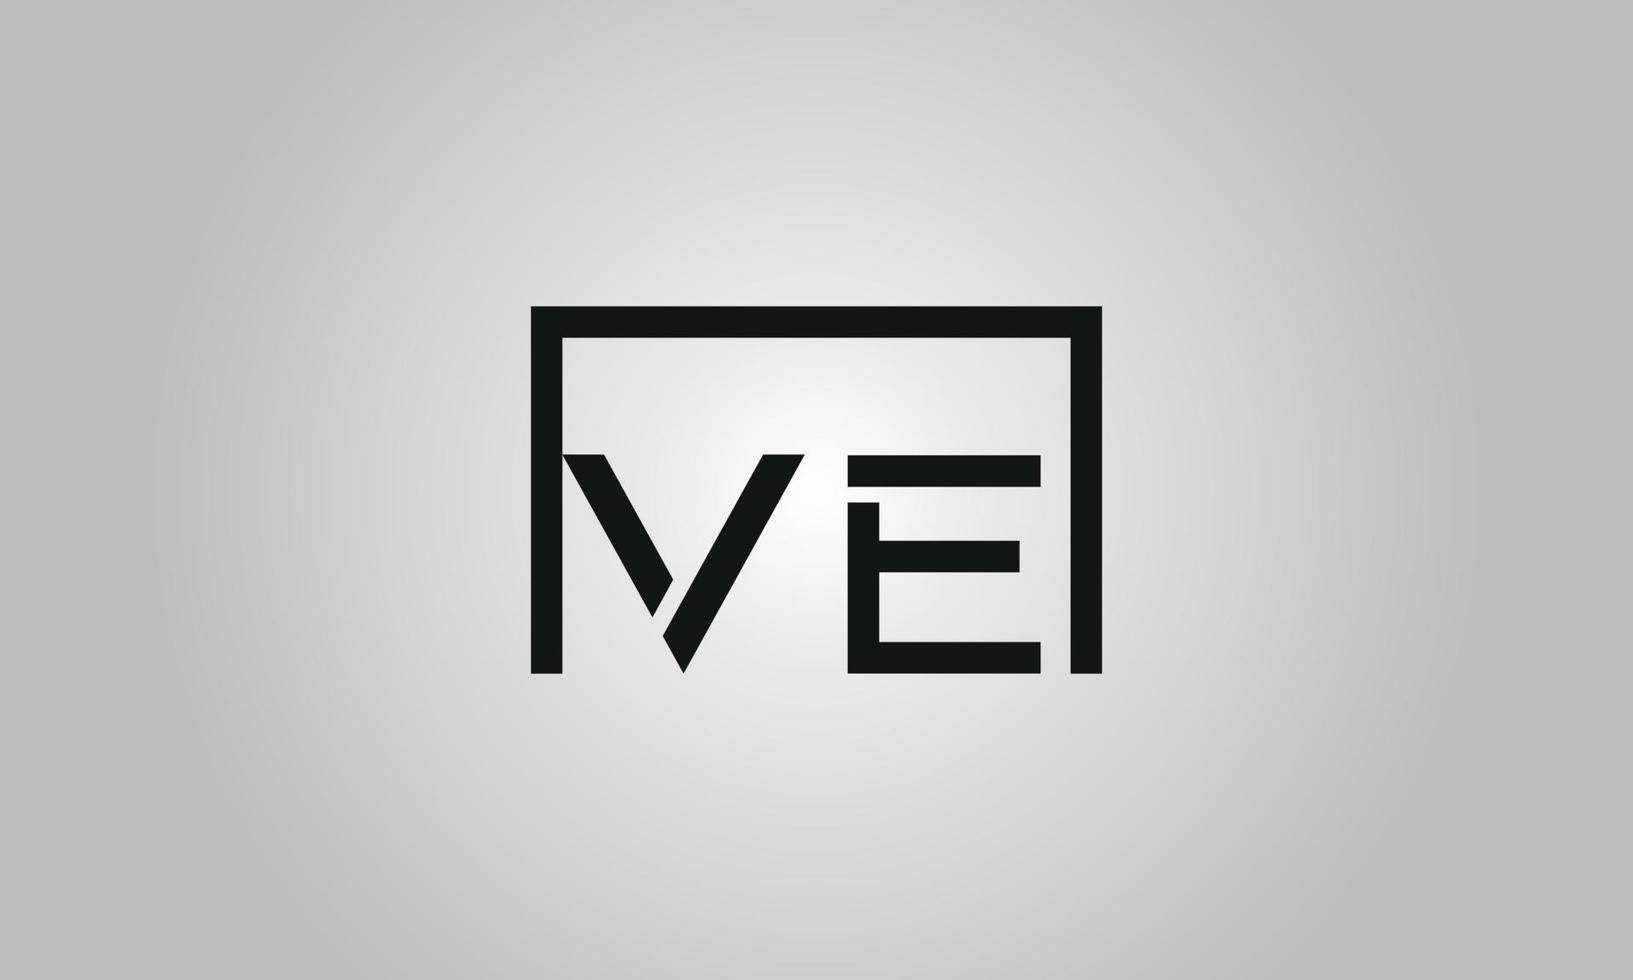 design de logotipo letra ve. ve logotipo com forma quadrada em cores pretas modelo de vetor livre.